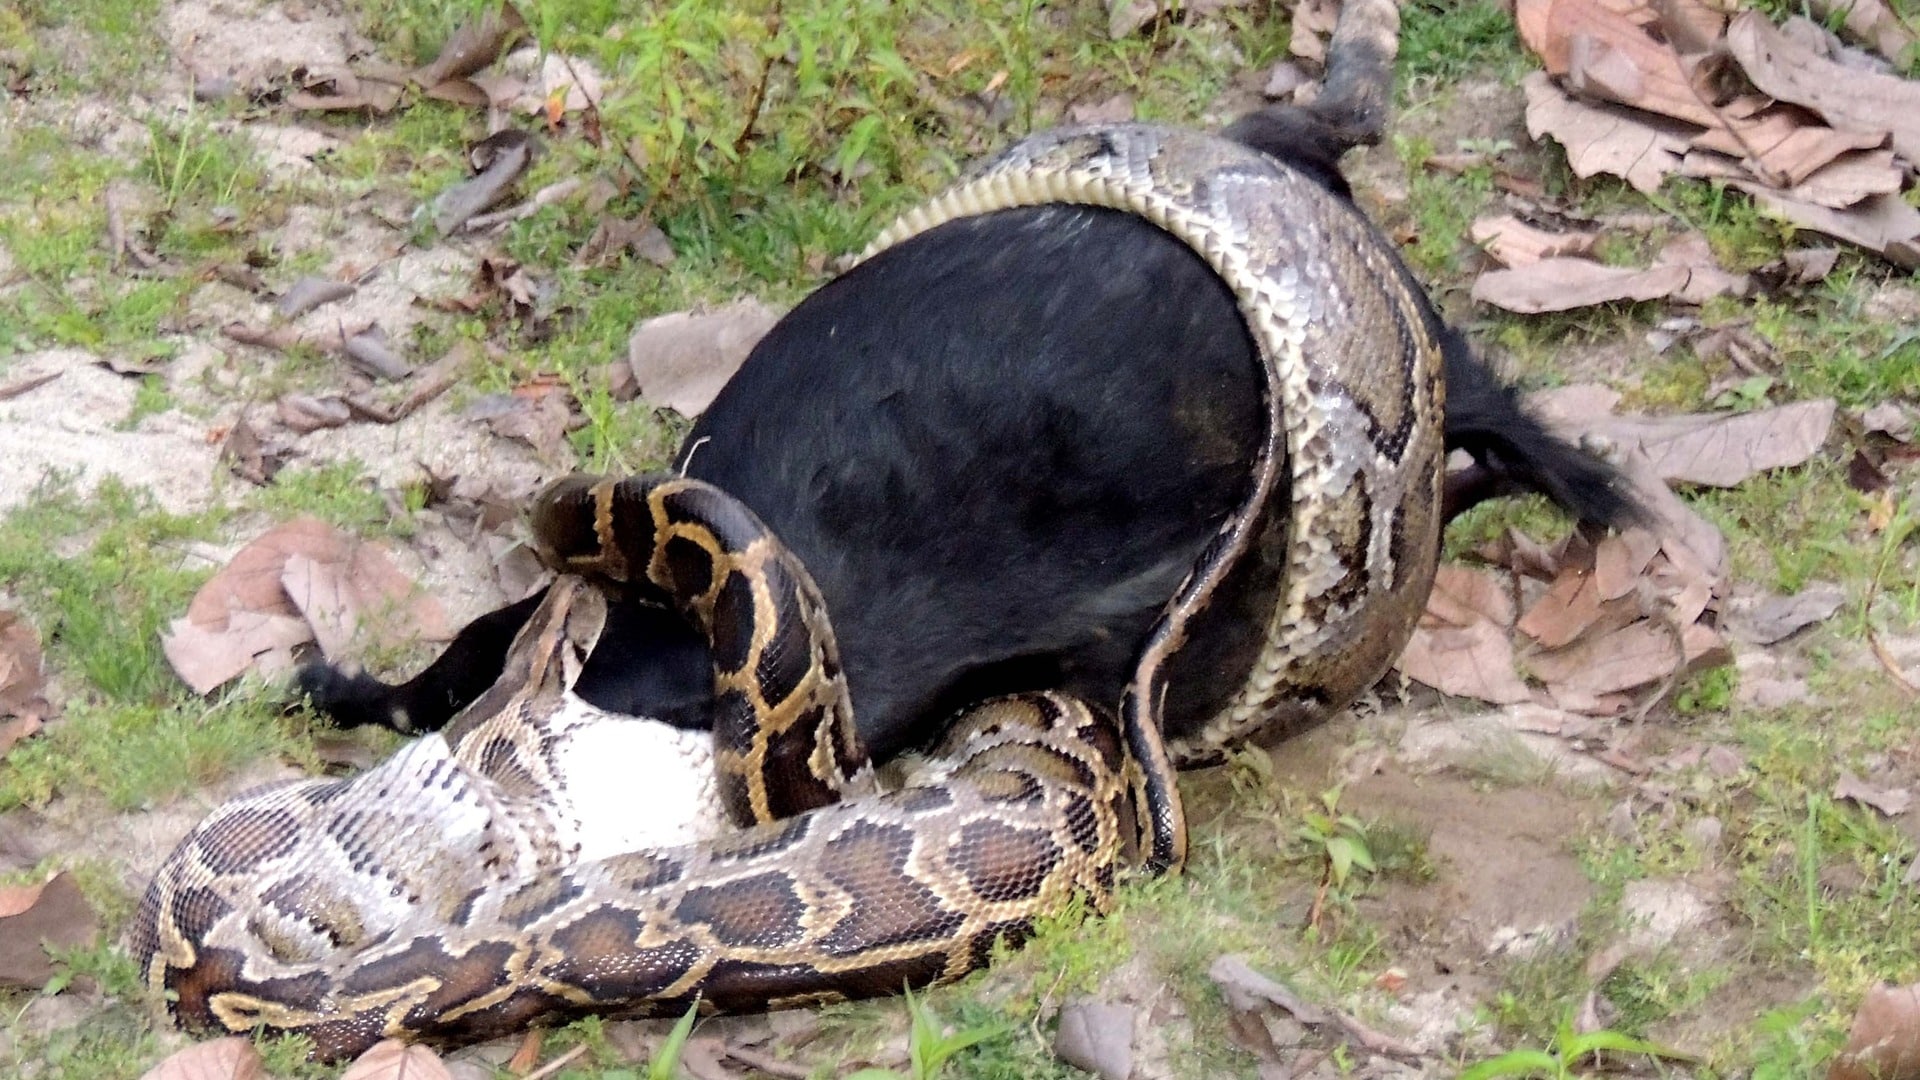 Змеи заглатывают добычу целиком. Змея Анаконда заглатывает питона. Сетчатый питон против анаконды.